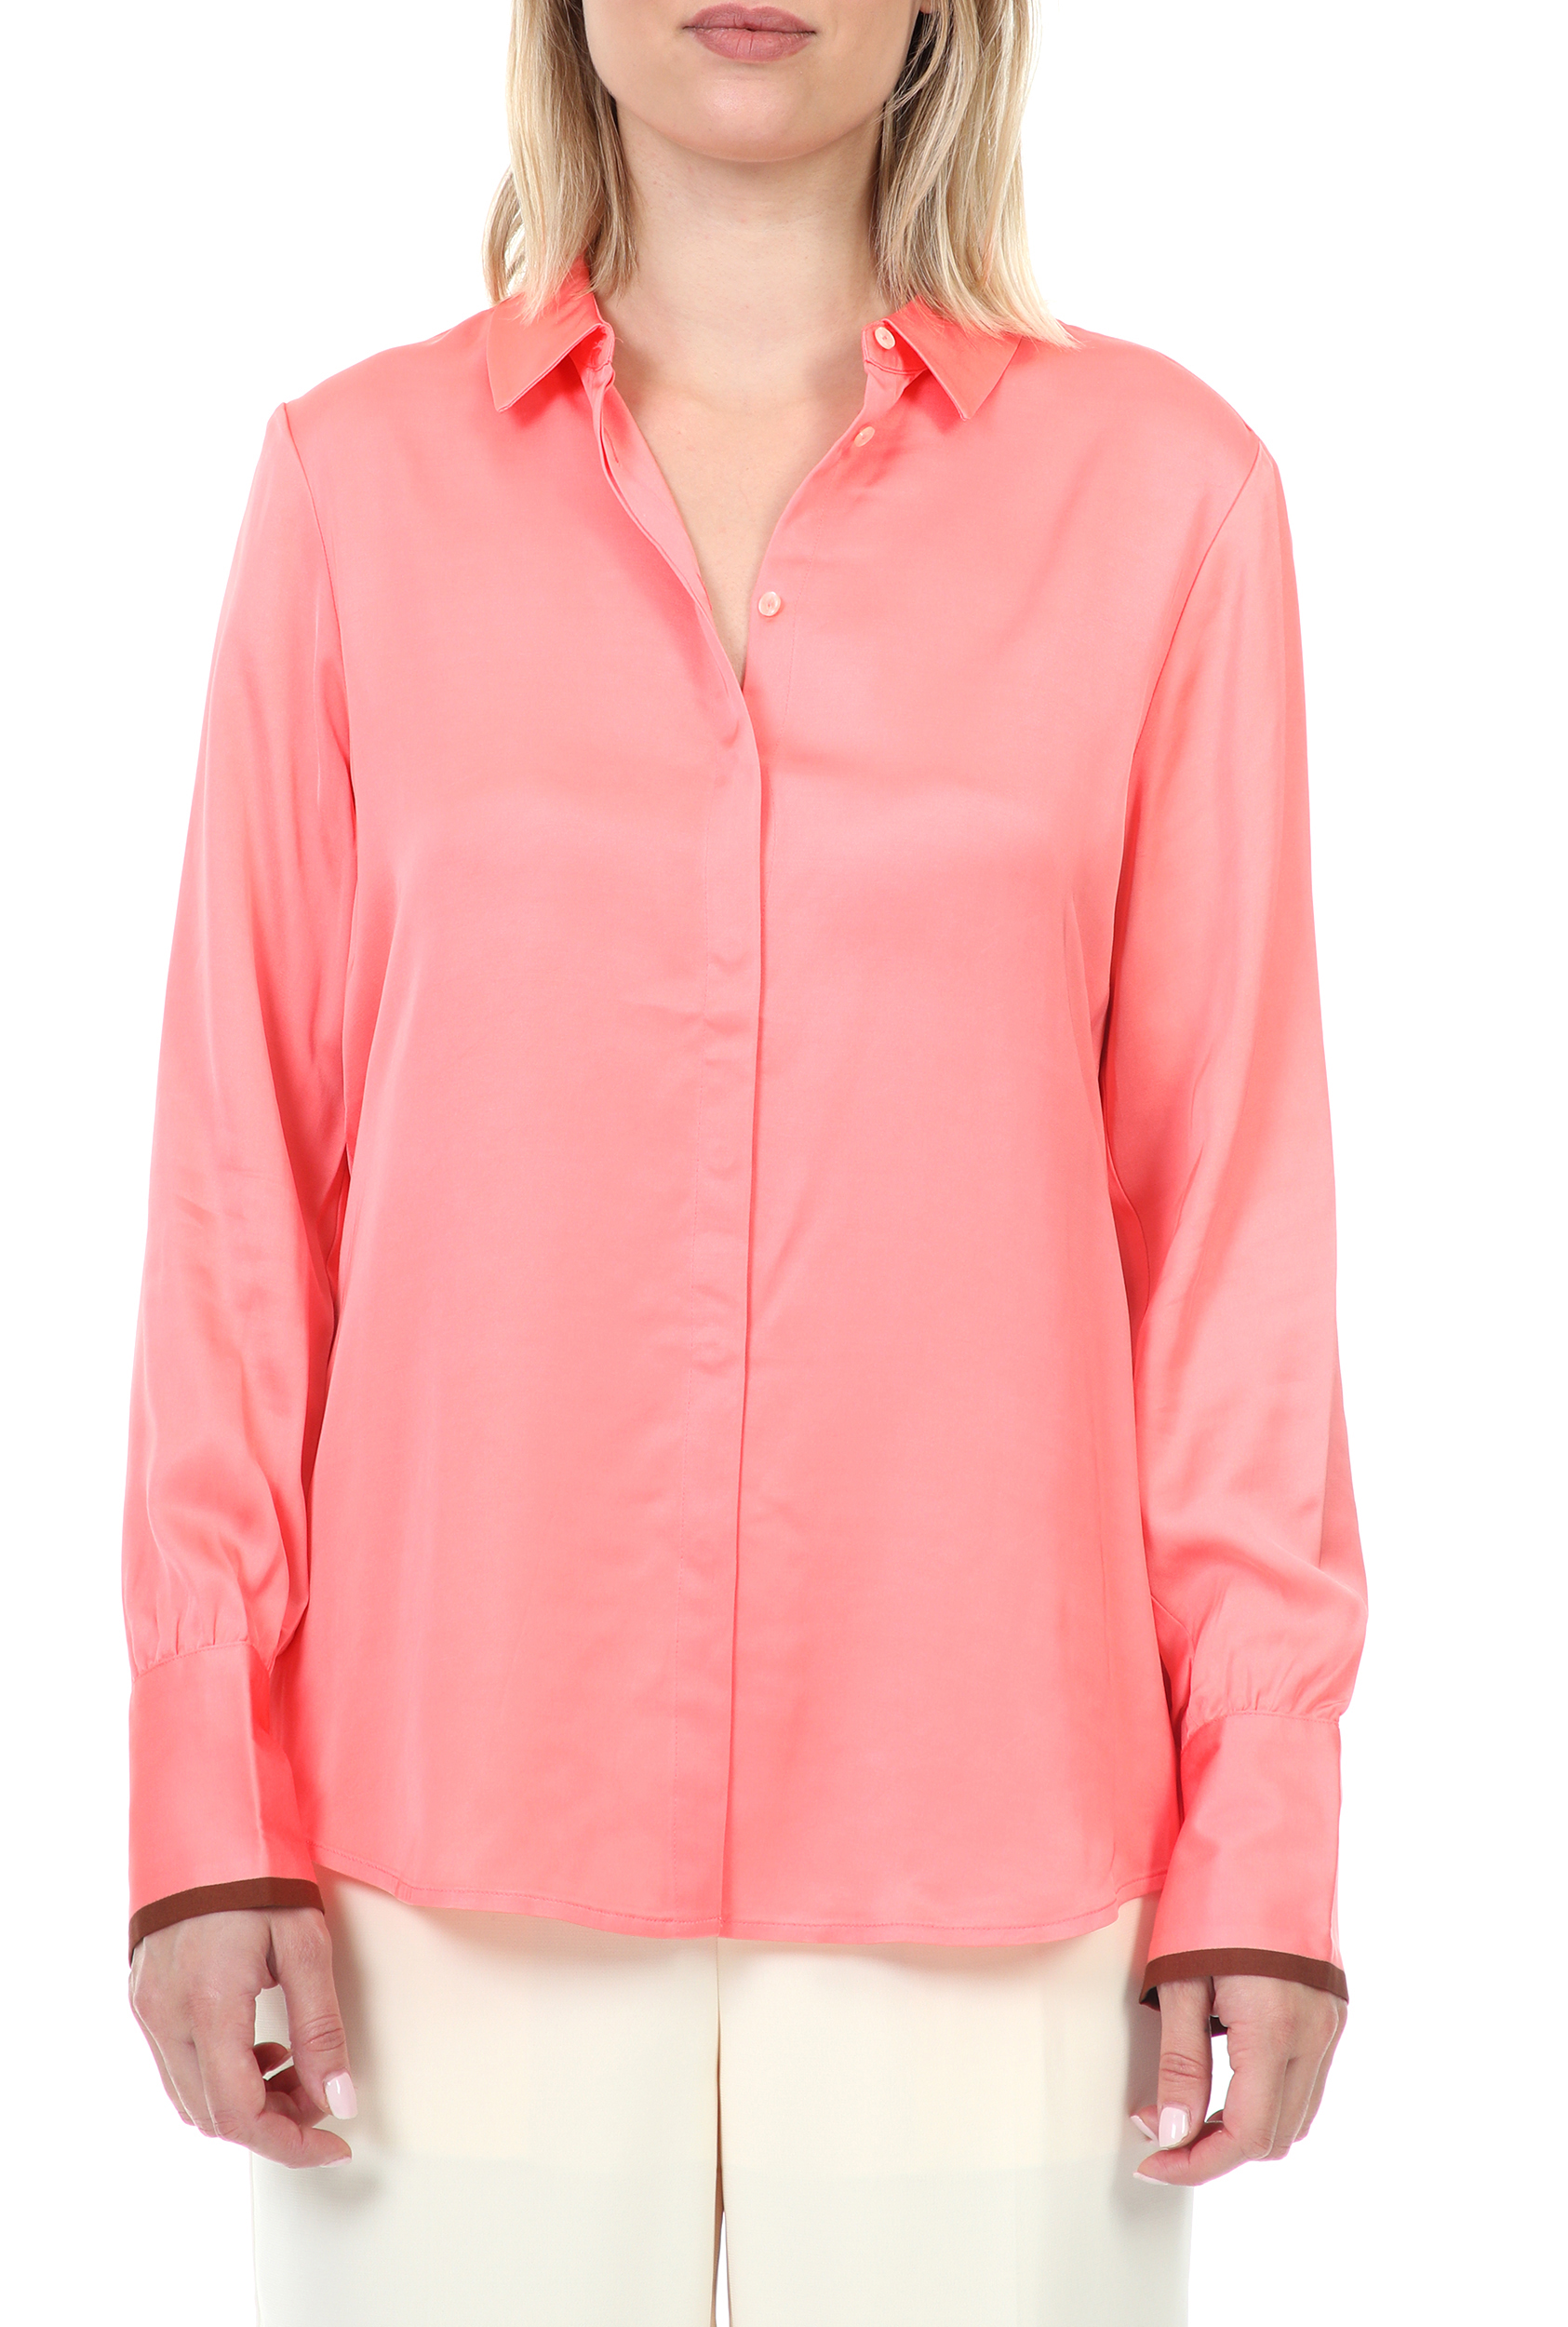 Γυναικεία/Ρούχα/Πουκάμισα/Μακρυμάνικα SCOTCH & SODA - Γυναικείο πουκάμισο SCOTCH & SODA ροζ